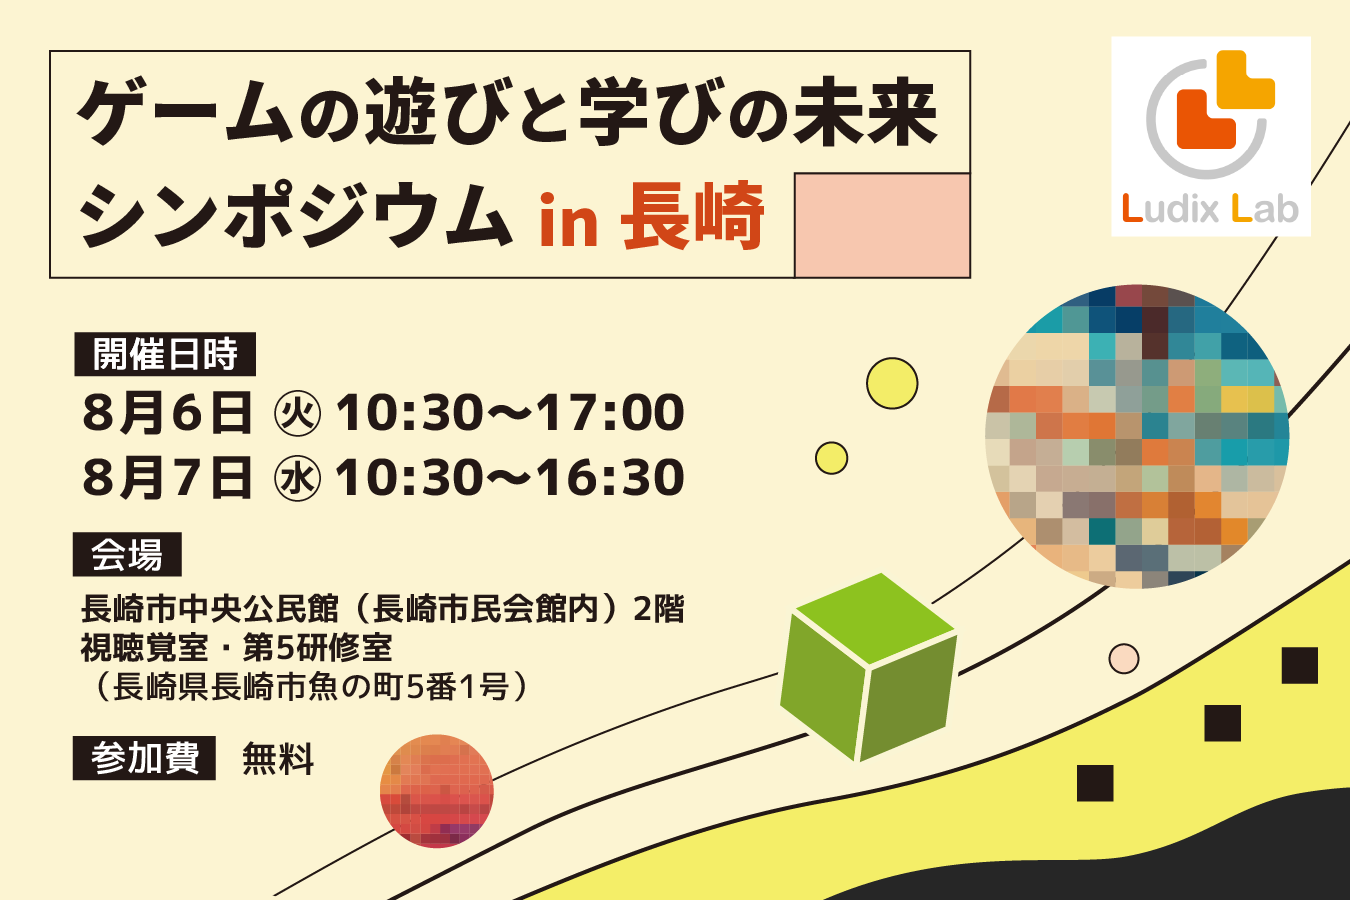 「ゲームの遊びと学びの未来シンポジウム in 長崎」開催のご案内